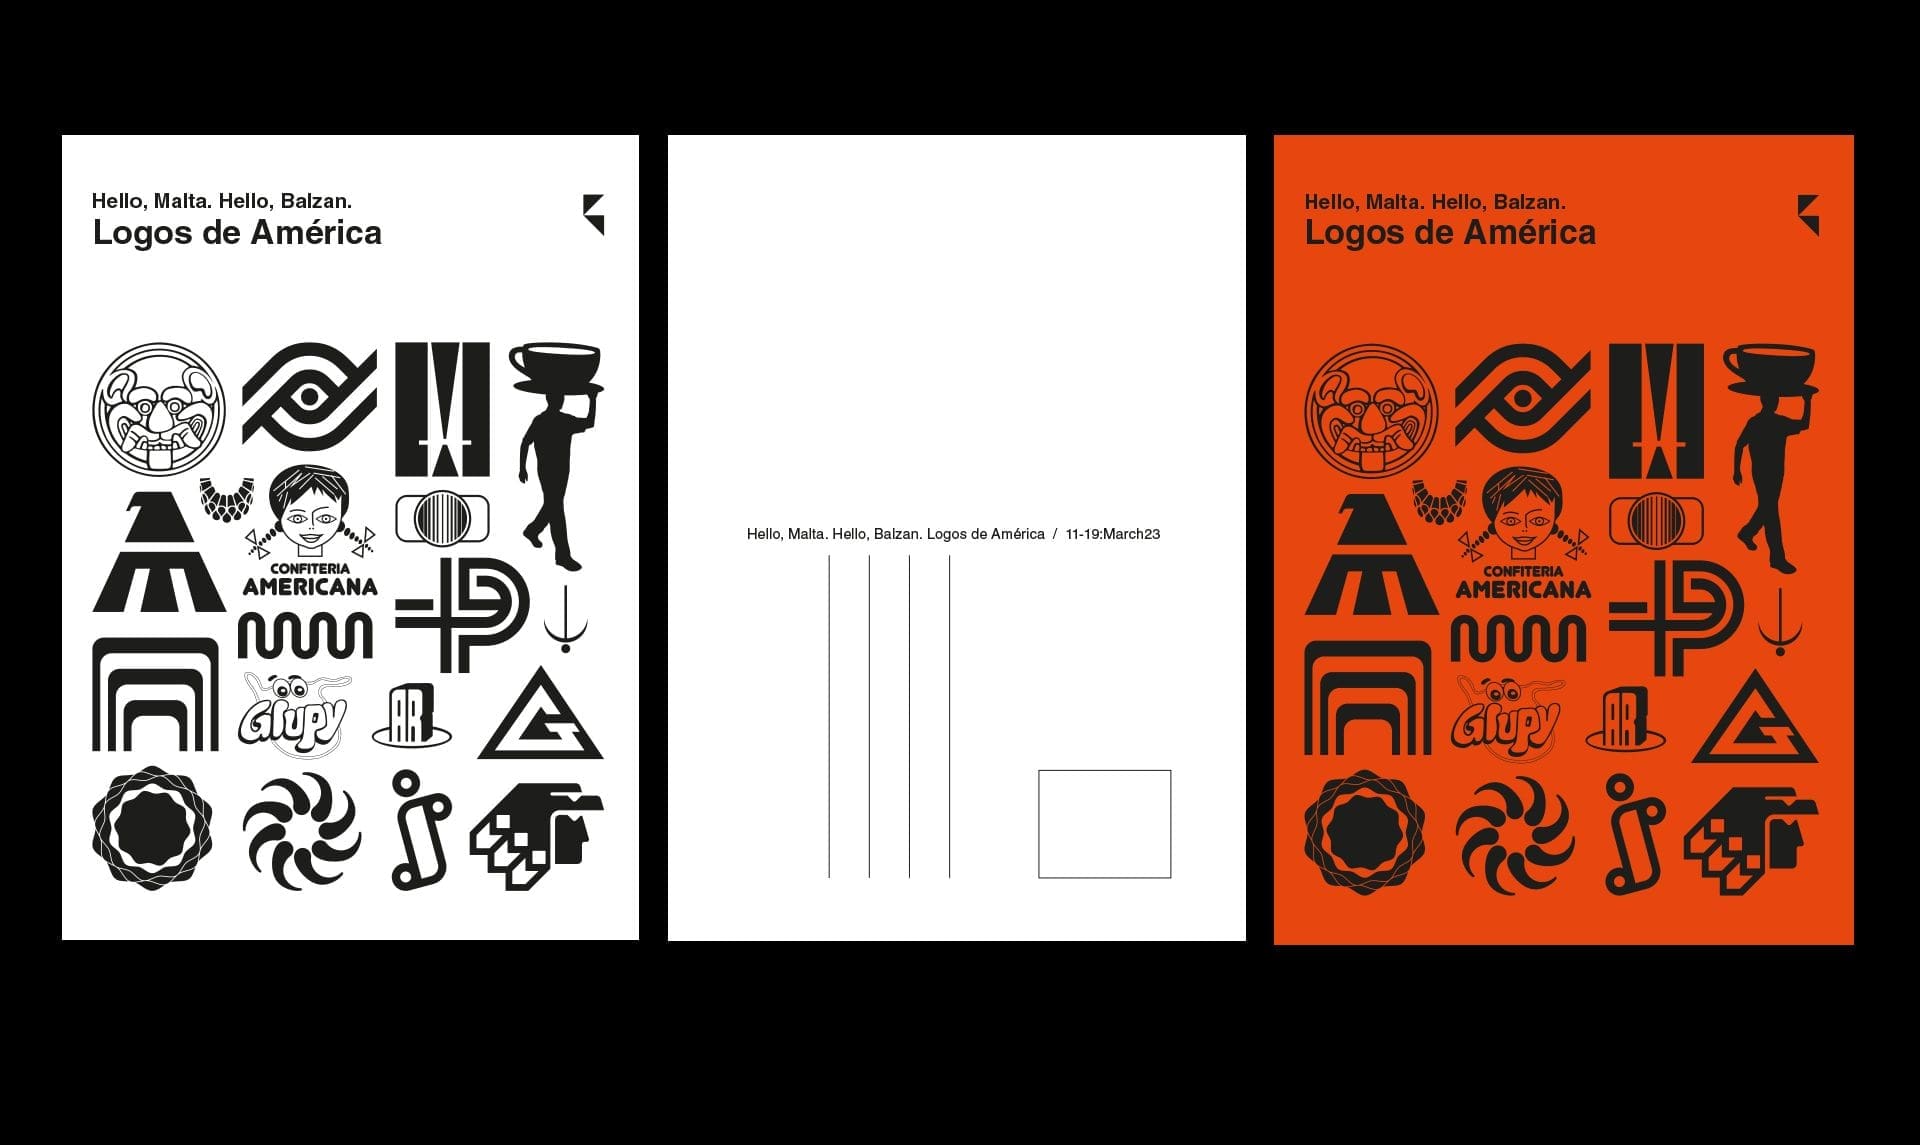 Logos de América Exhibition Postcards 2023 - Malta